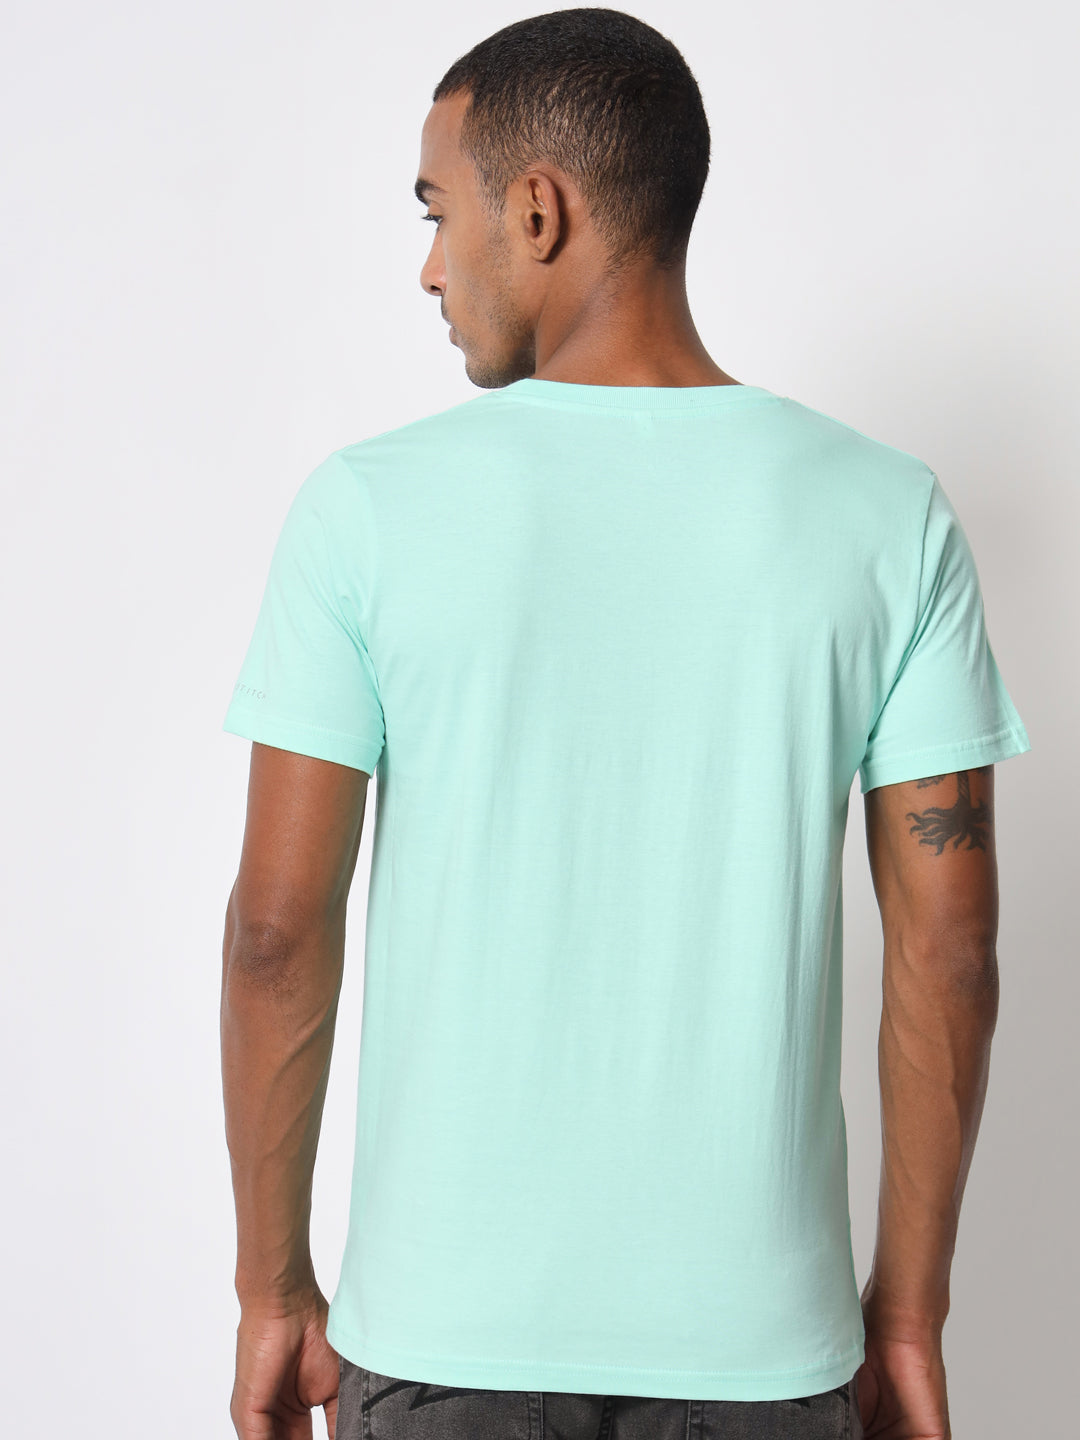 Men's T-Shirt Mint Green